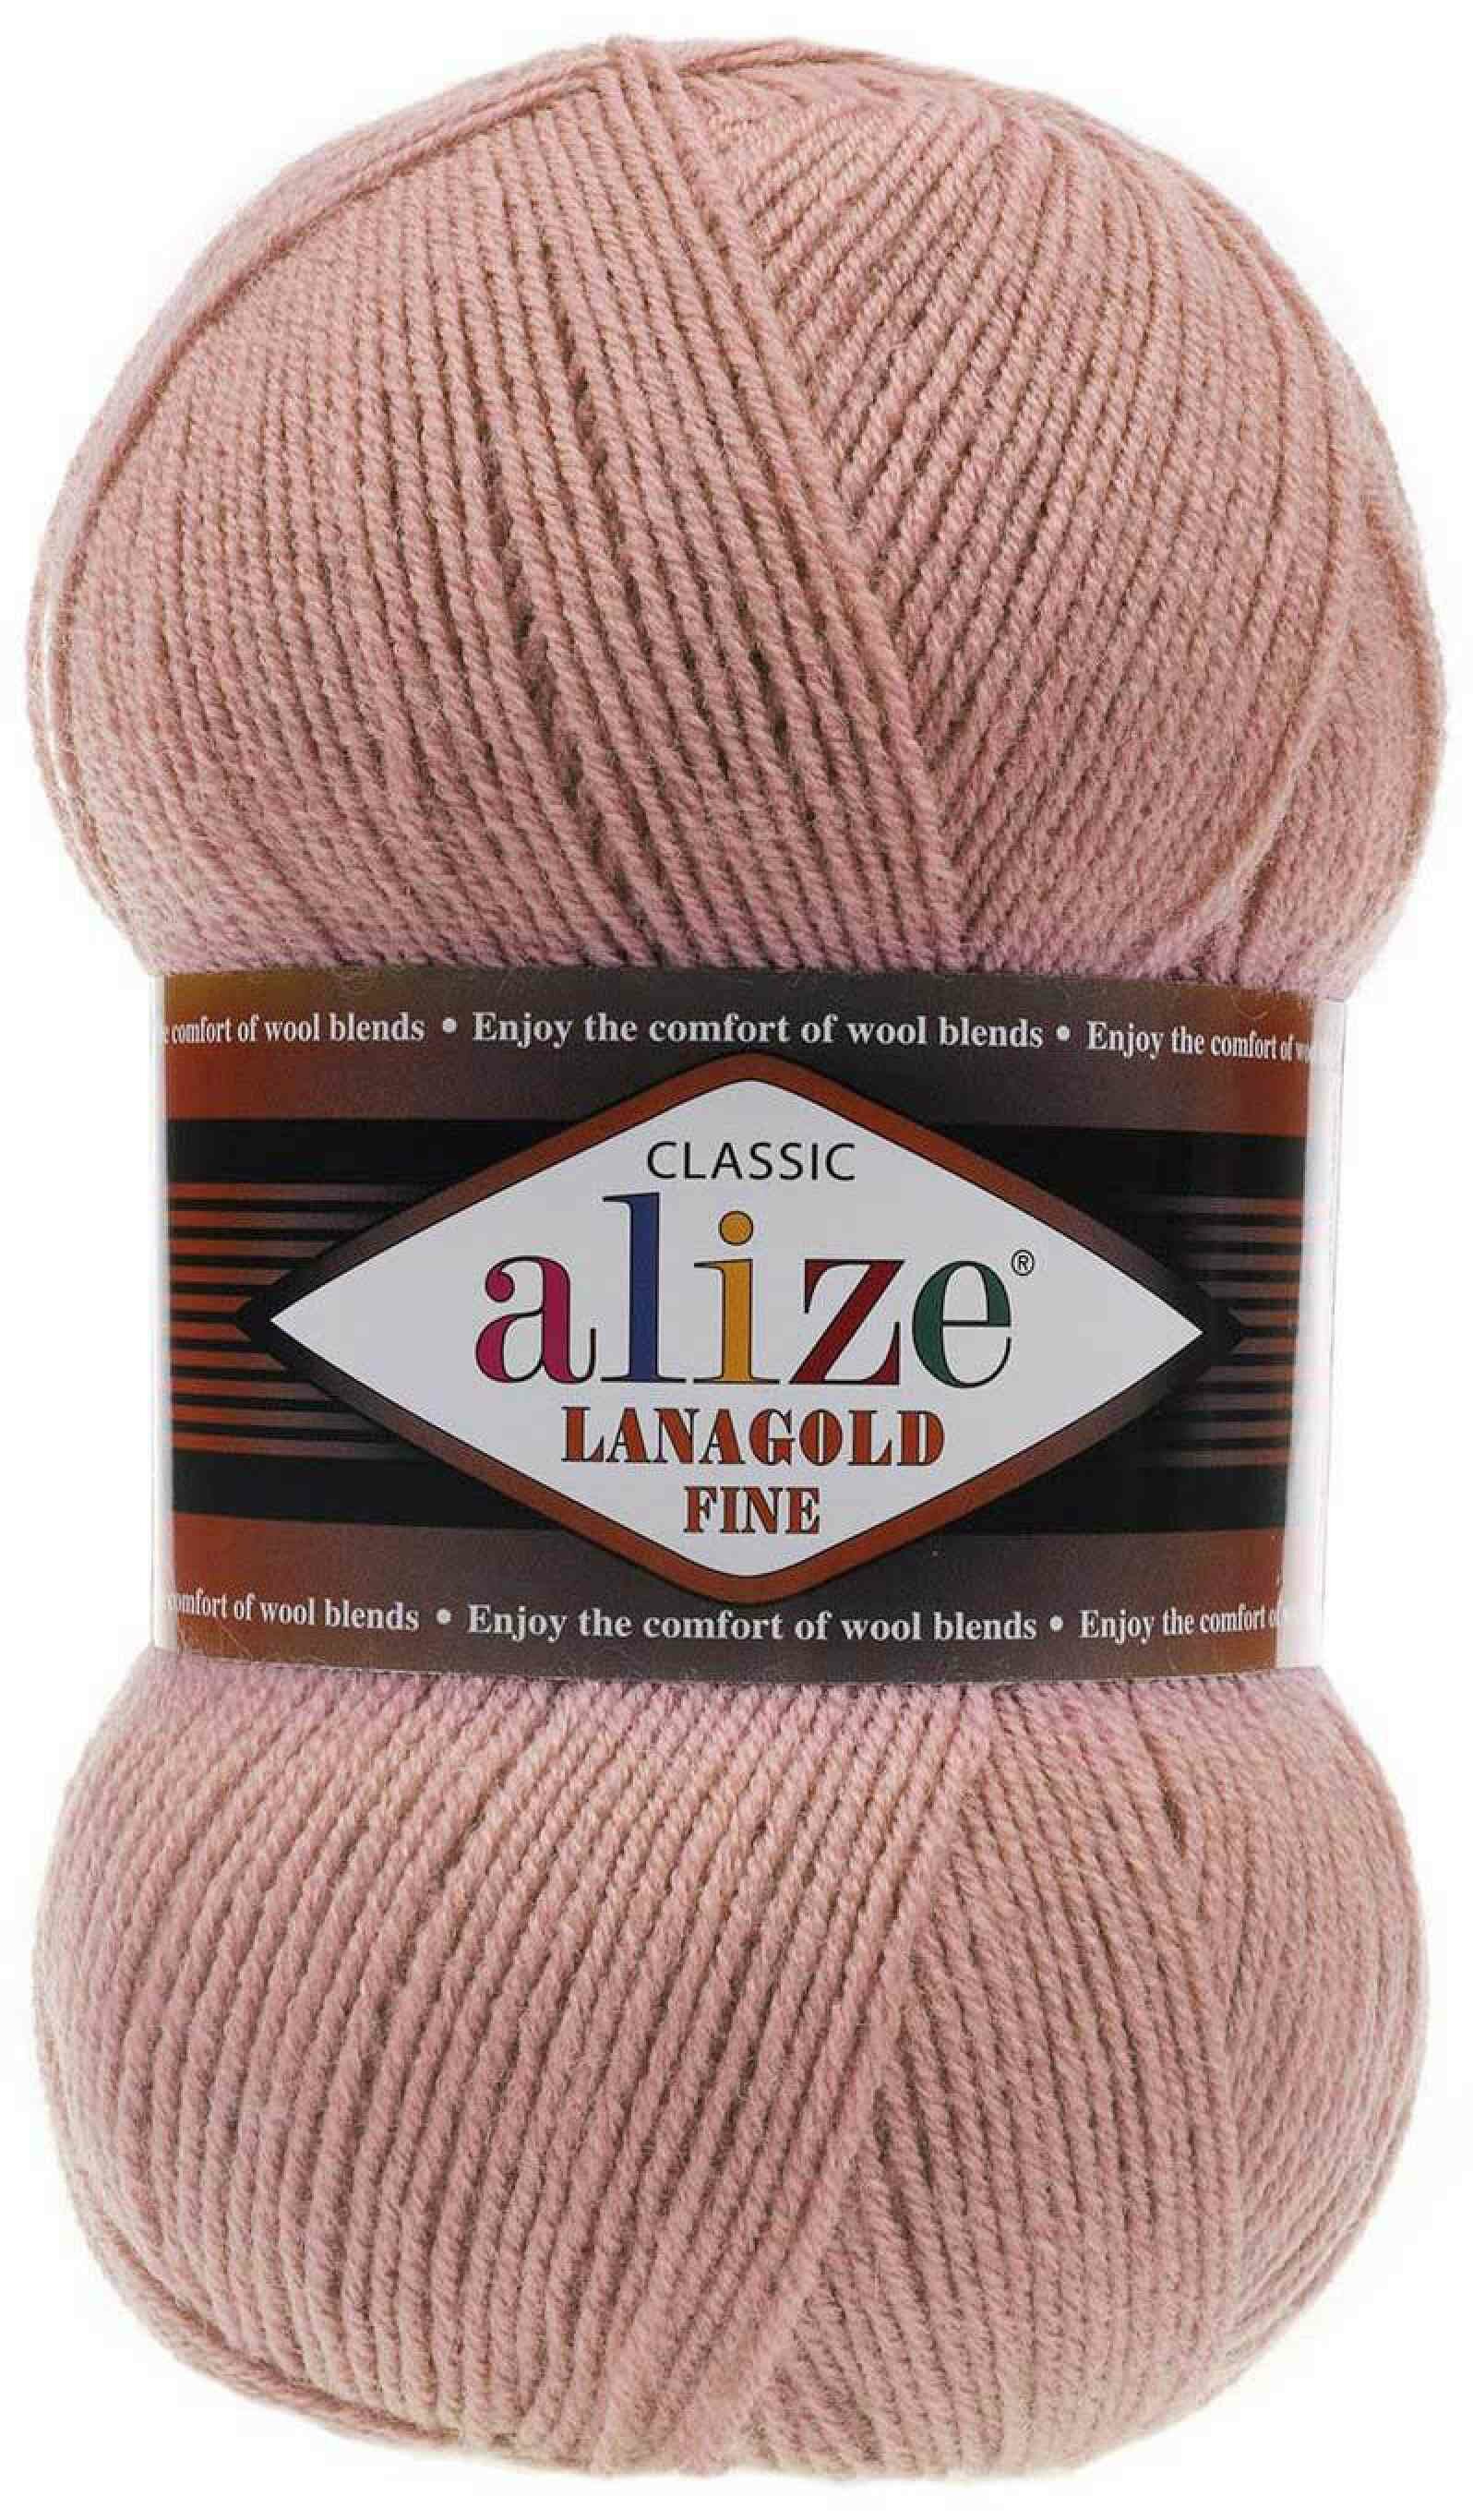  Alize Lanagold Fine   (173), 51%/49%, 390, 100, 1